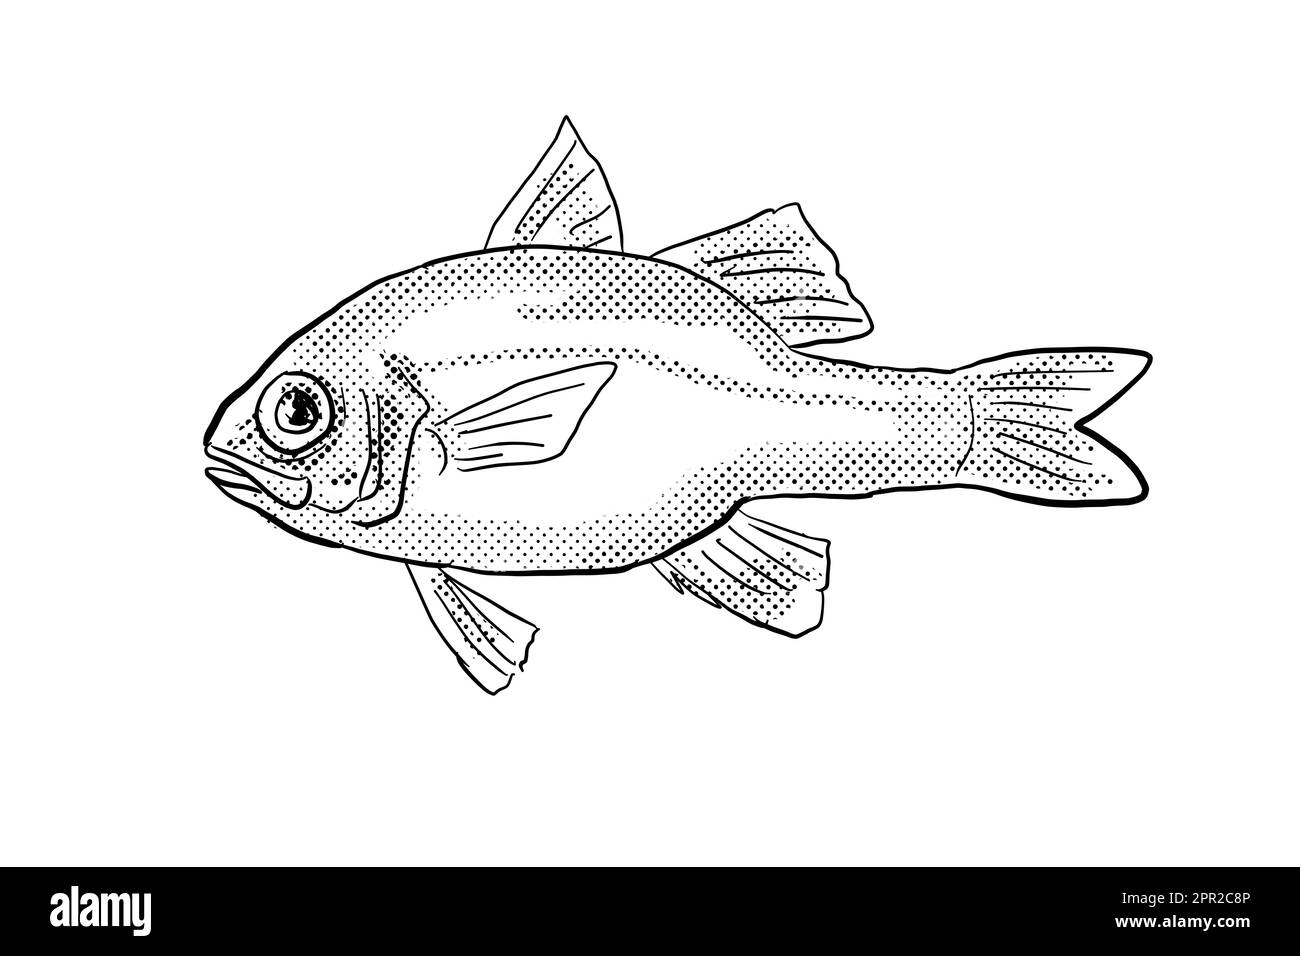 Zeichentrickzeichnung eines Apogon erythrinus oder eines hawaiianischen Rubinkardinalfisches, ein Fisch, der auf Hawaii und hawaiianischen Inselgruppen endemisch ist, mit Halbtonpunkten Stockfoto